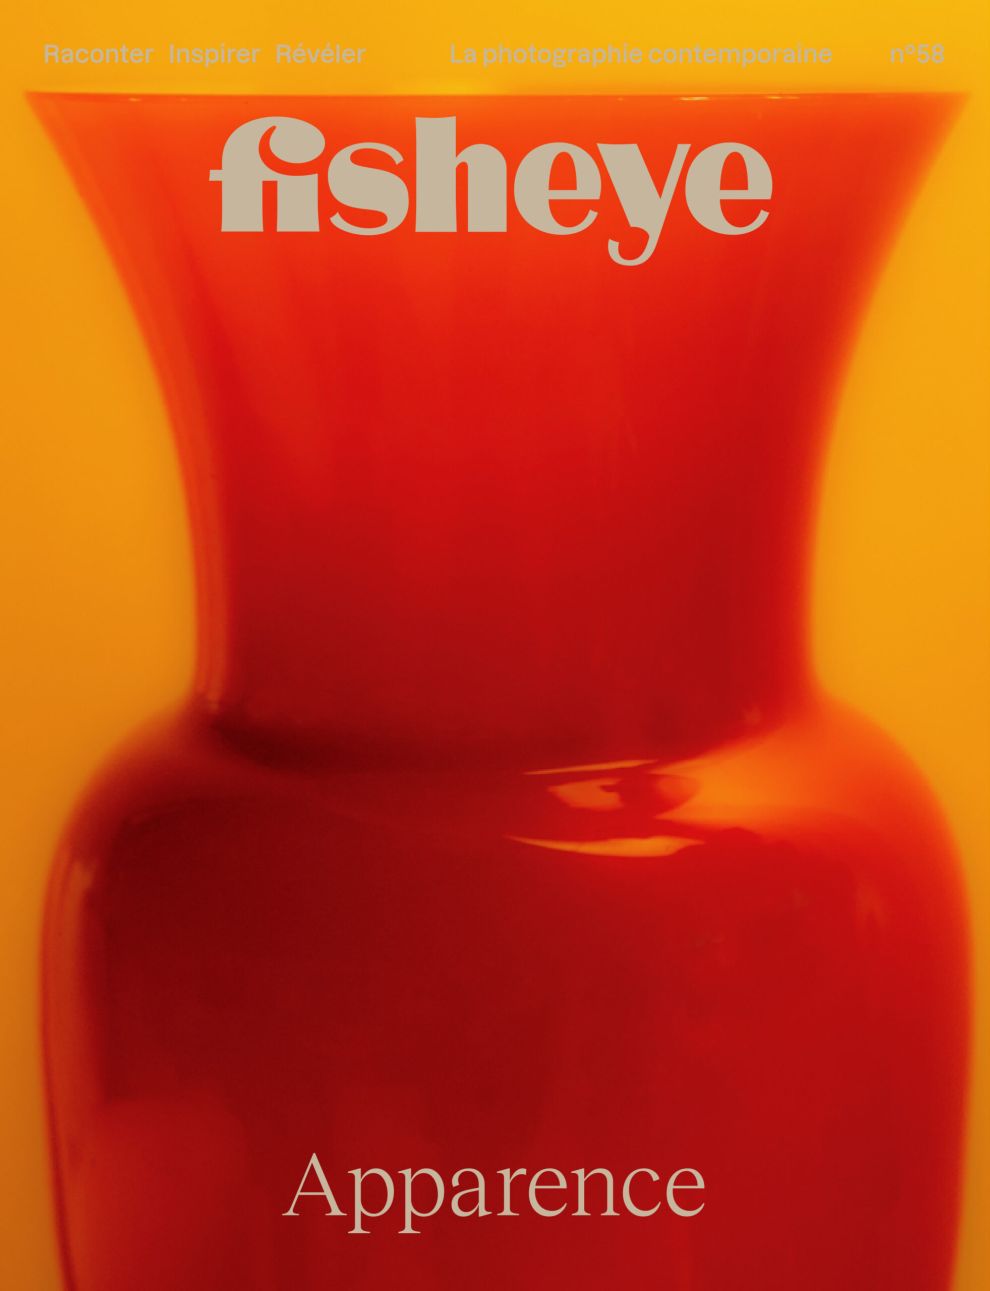 Fisheye Magazine #59 Apparence